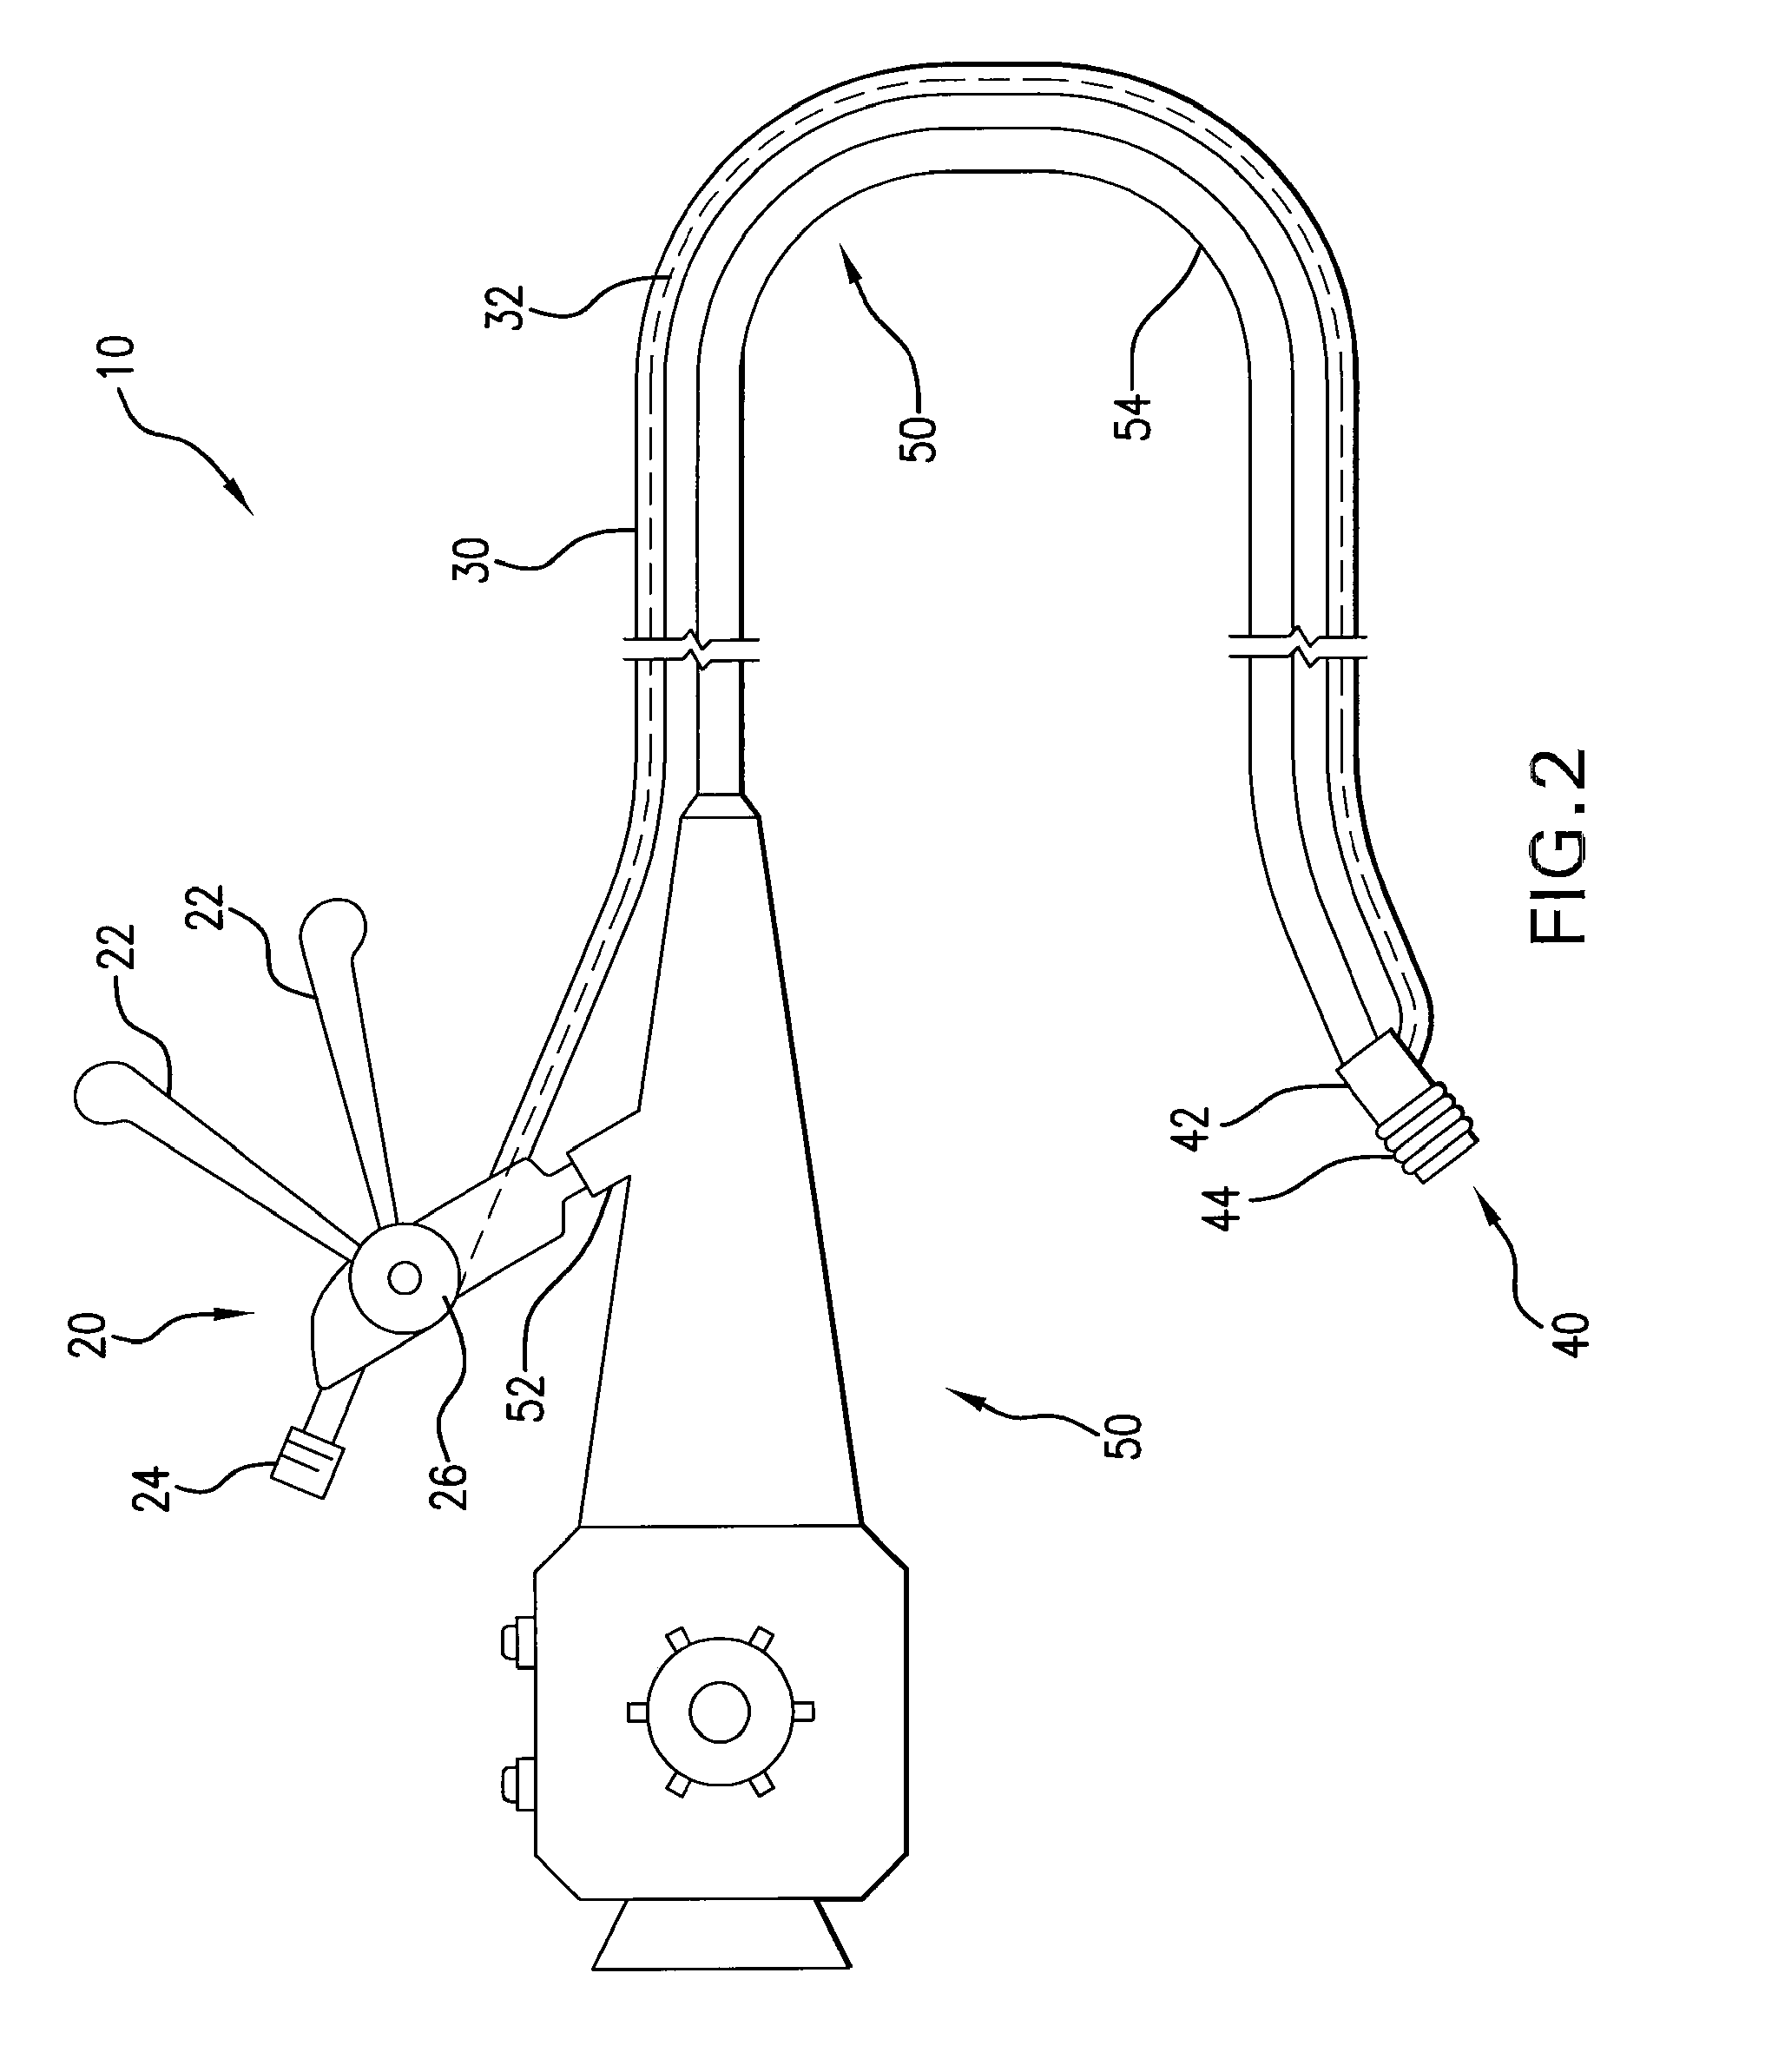 Ligating instrument